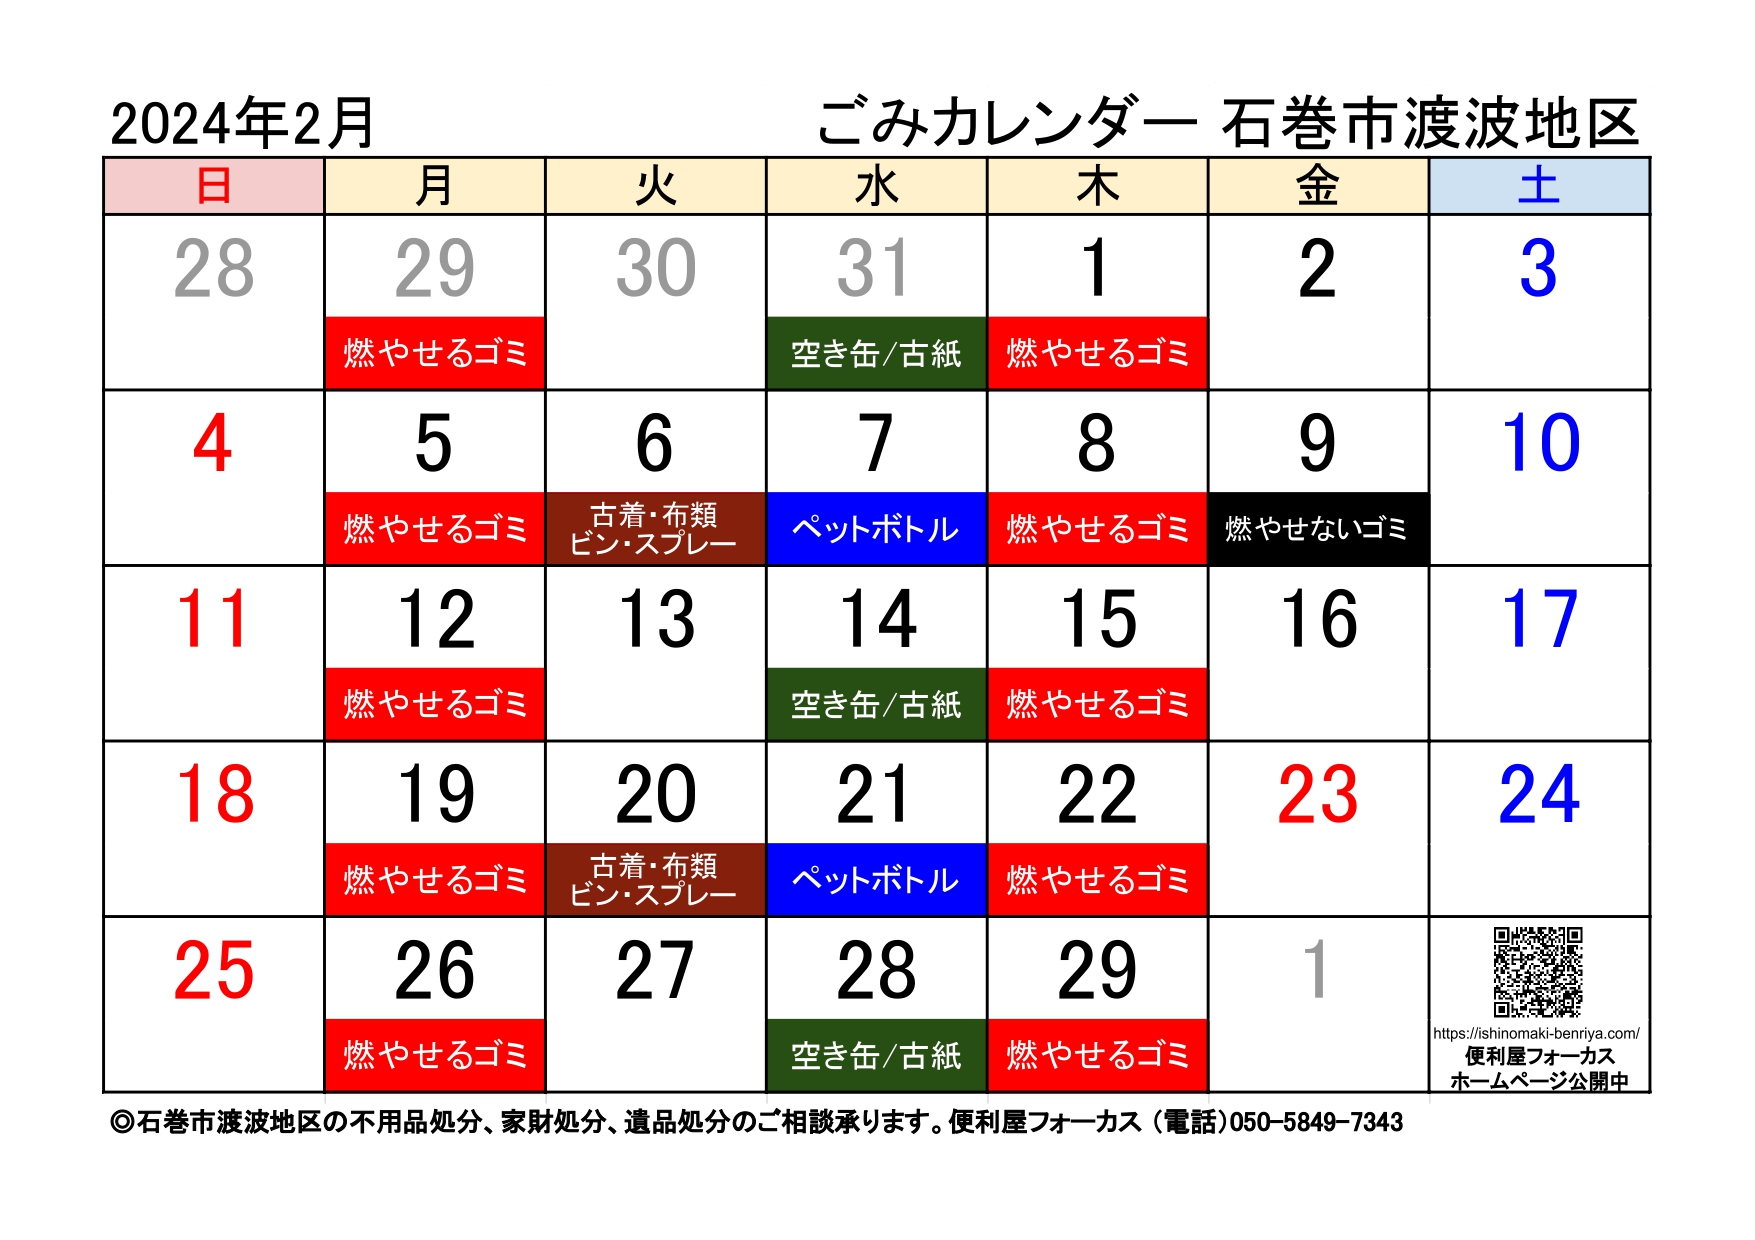 石巻市渡波地区ゴミ収集カレンダー2024年2月版（令和６年2月版）A4横サイズ